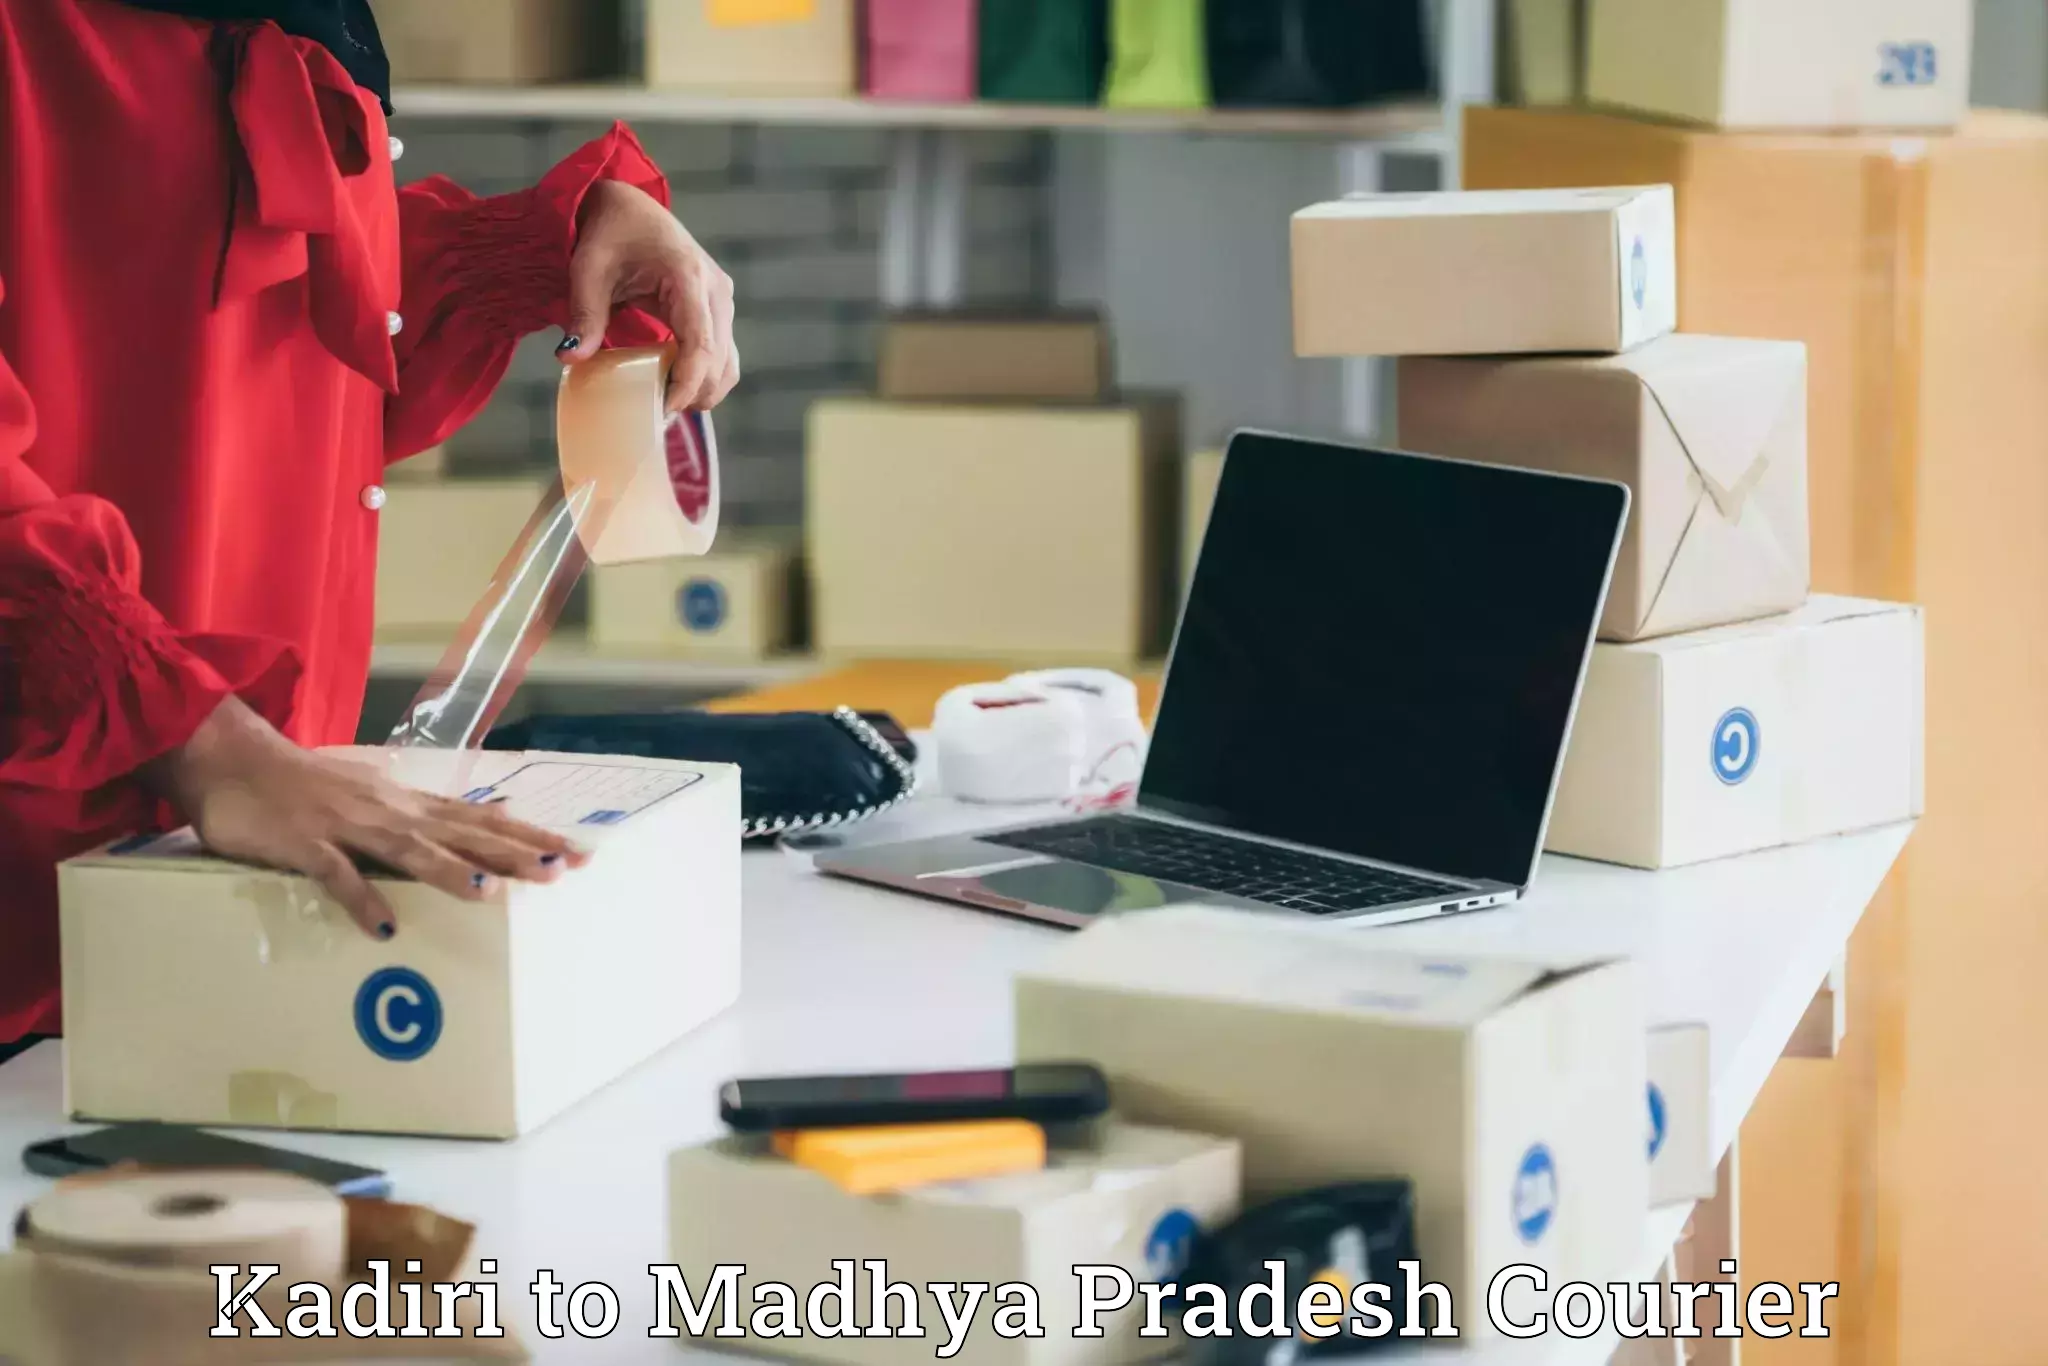 Express delivery capabilities Kadiri to Barhi Katni